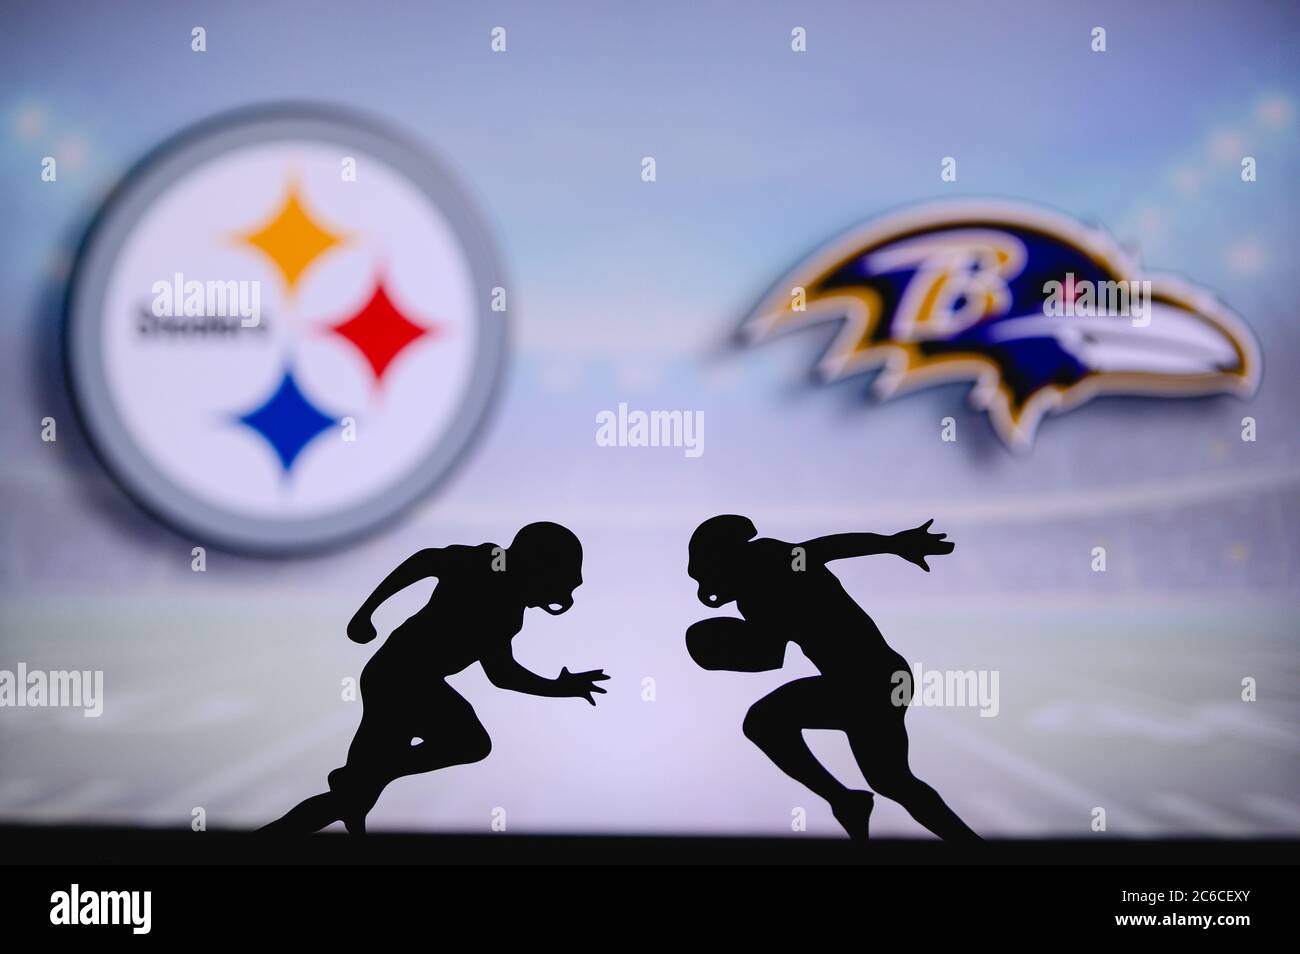 Pittsburgh Steelers contre Baltimore Ravens. Affiche NFL Match. Deux joueurs de football américain se font face sur le terrain. Logo clubs en bac Banque D'Images